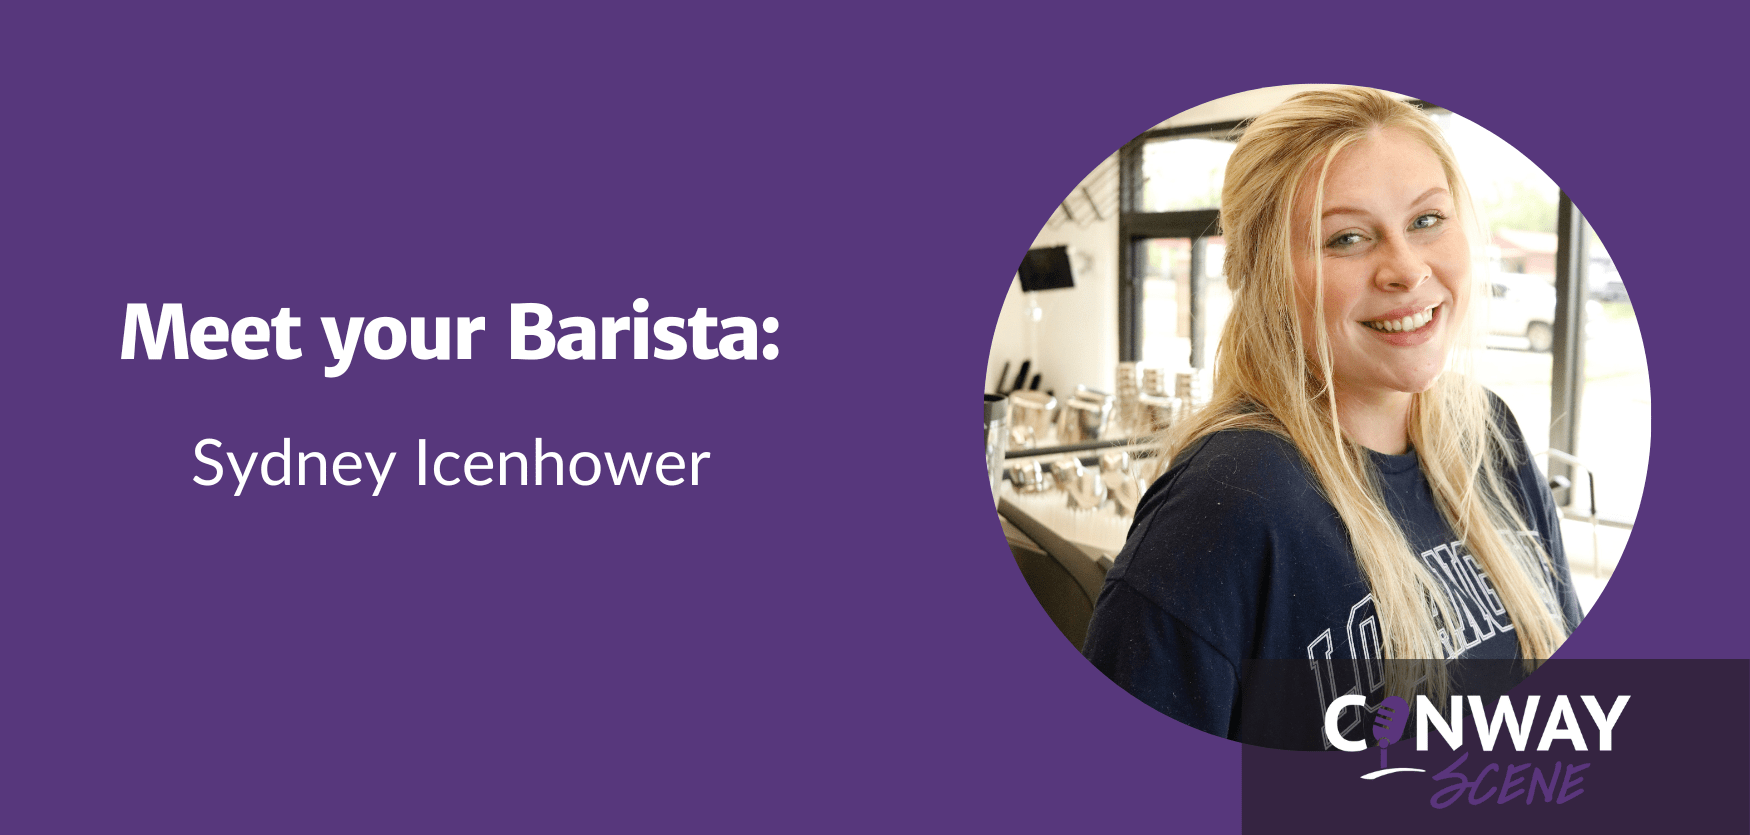 Meet your Barista Sydney Icenhower